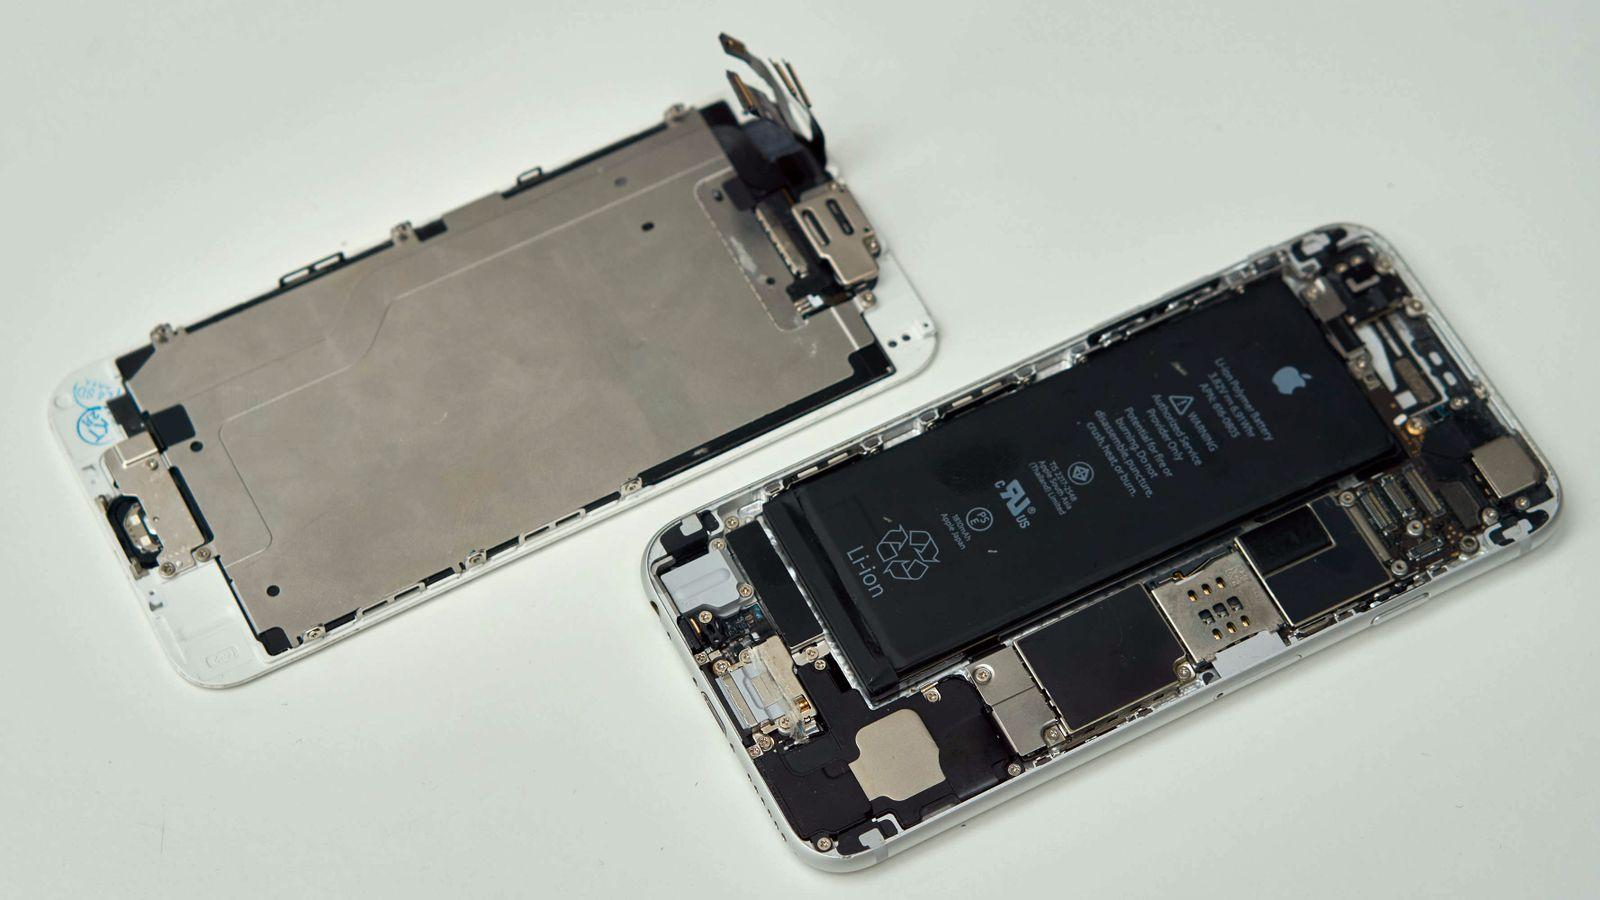 Det er mange ting som kan byttes ut på innsiden av en iPhone. Her fra en tidligere sak her på Tek.no der undertegnede reparerte en iPhone 6.